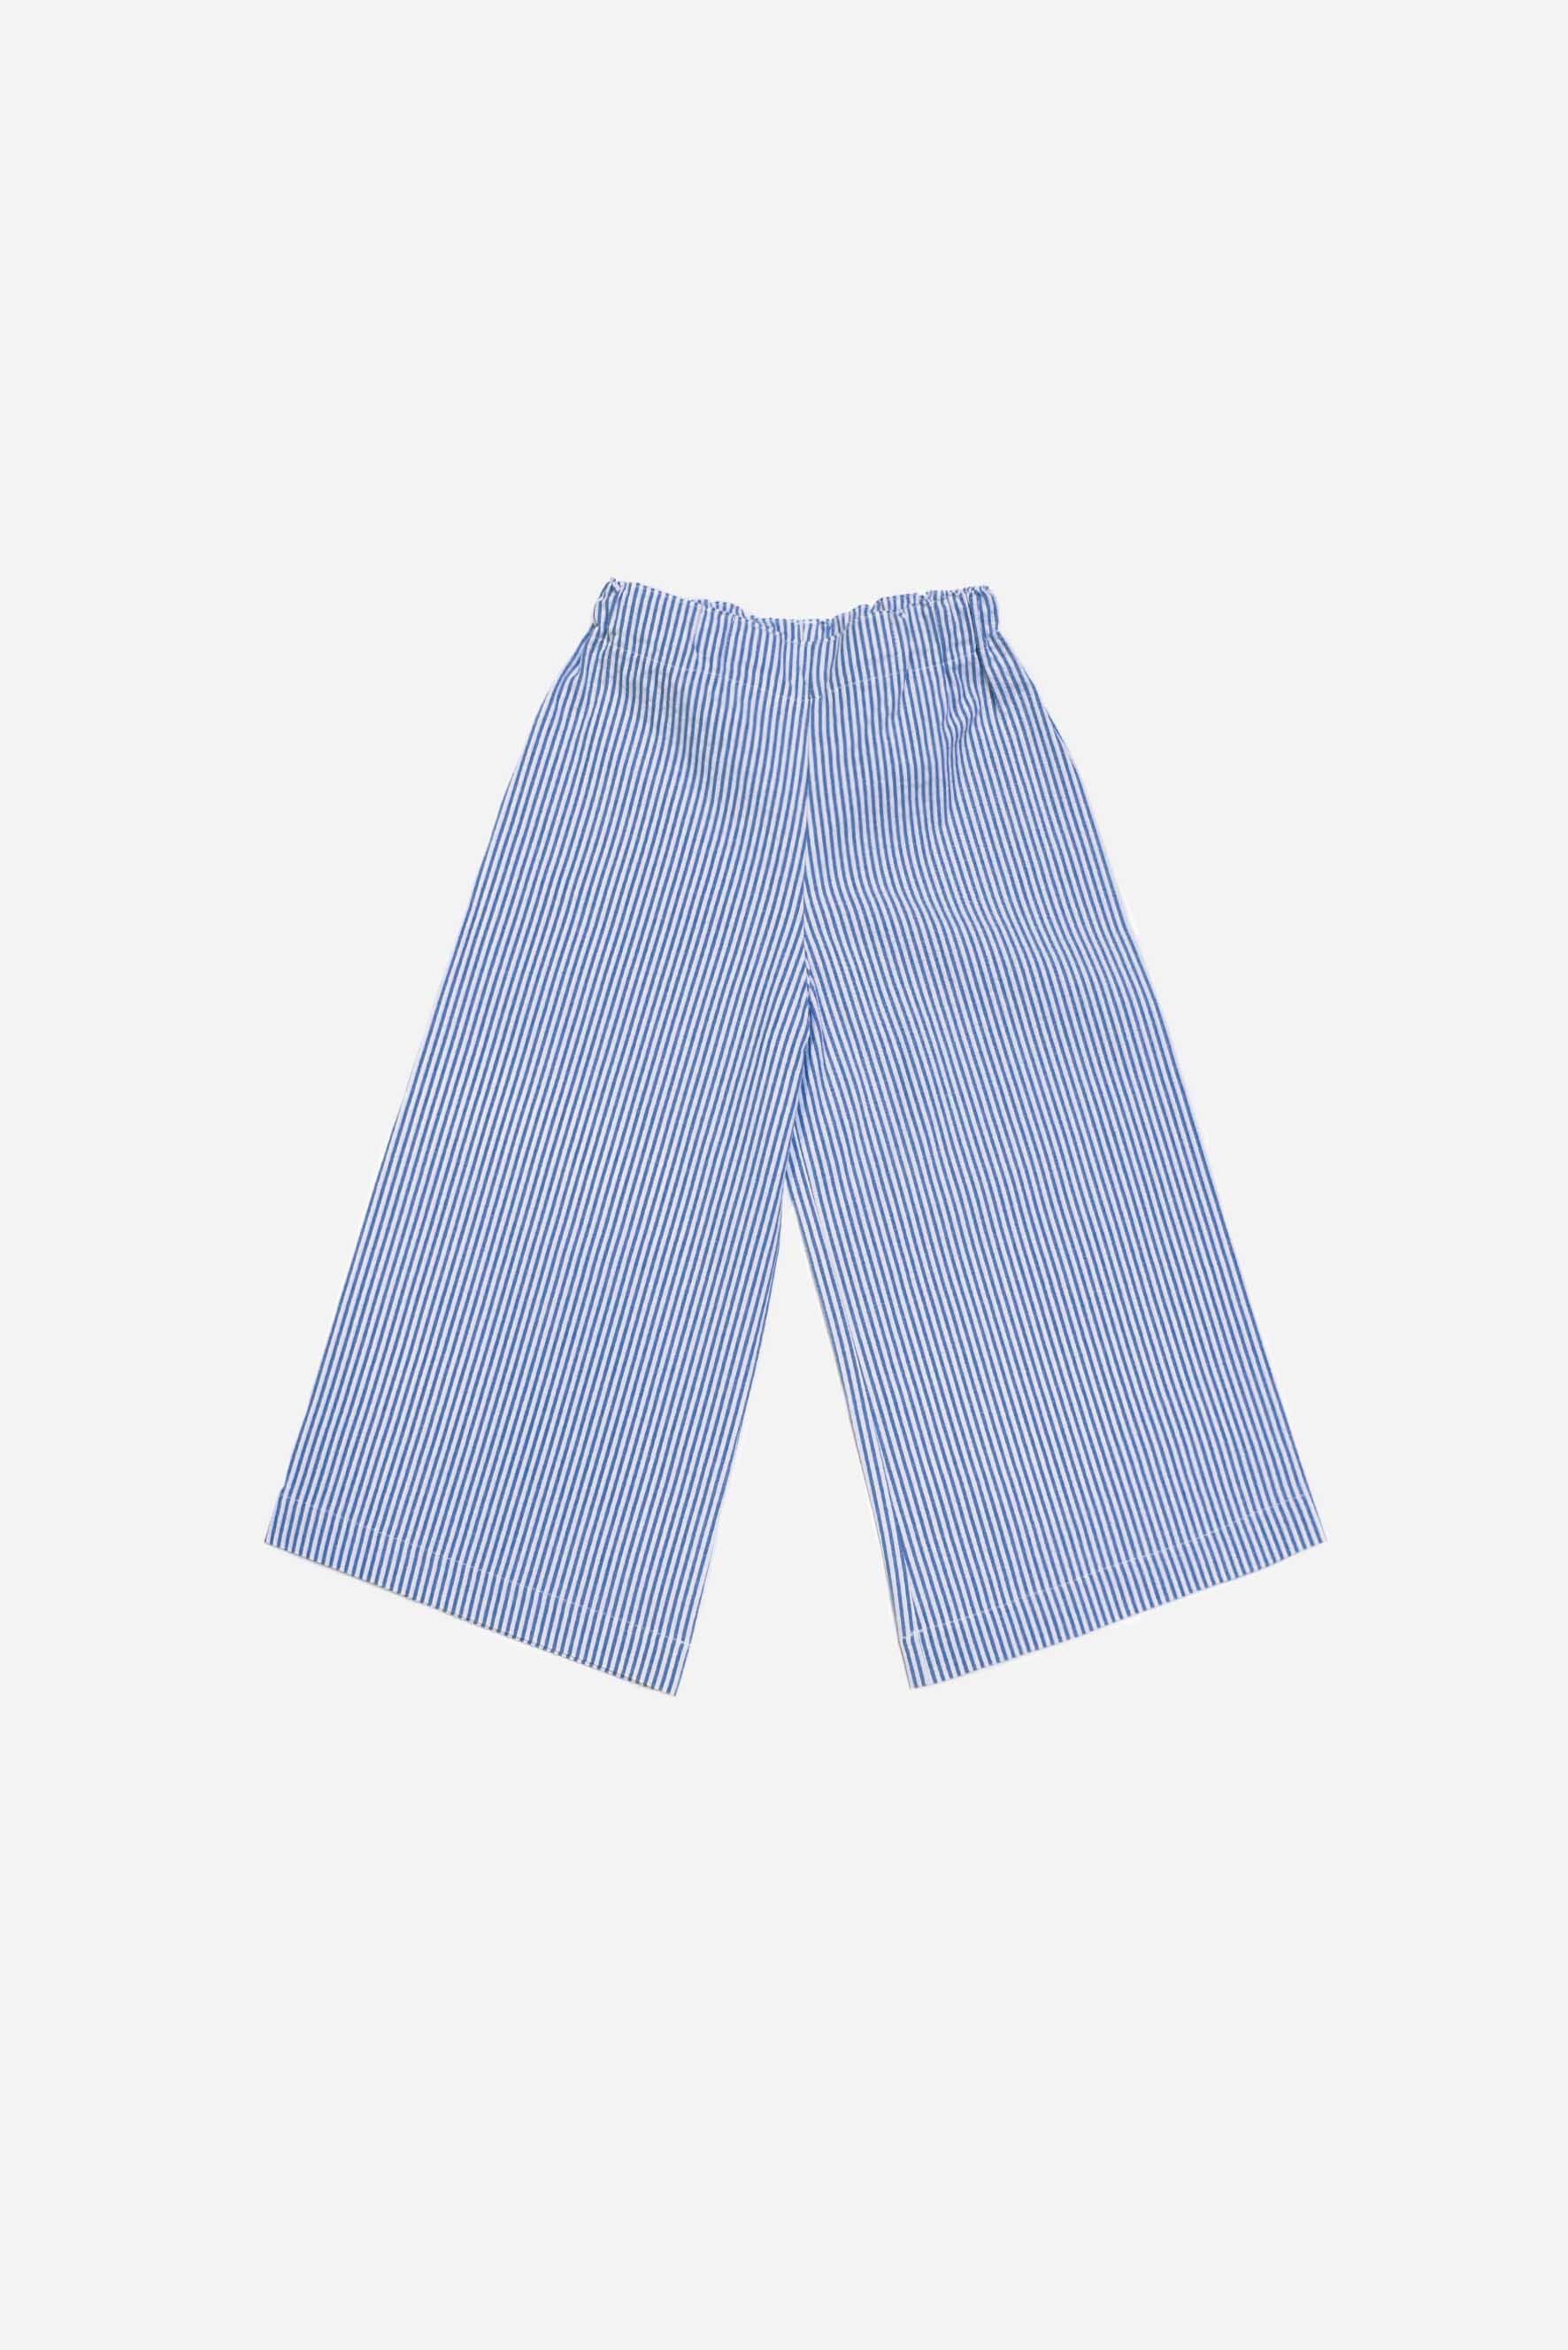 Pantaloni larghi bambina a righe blu